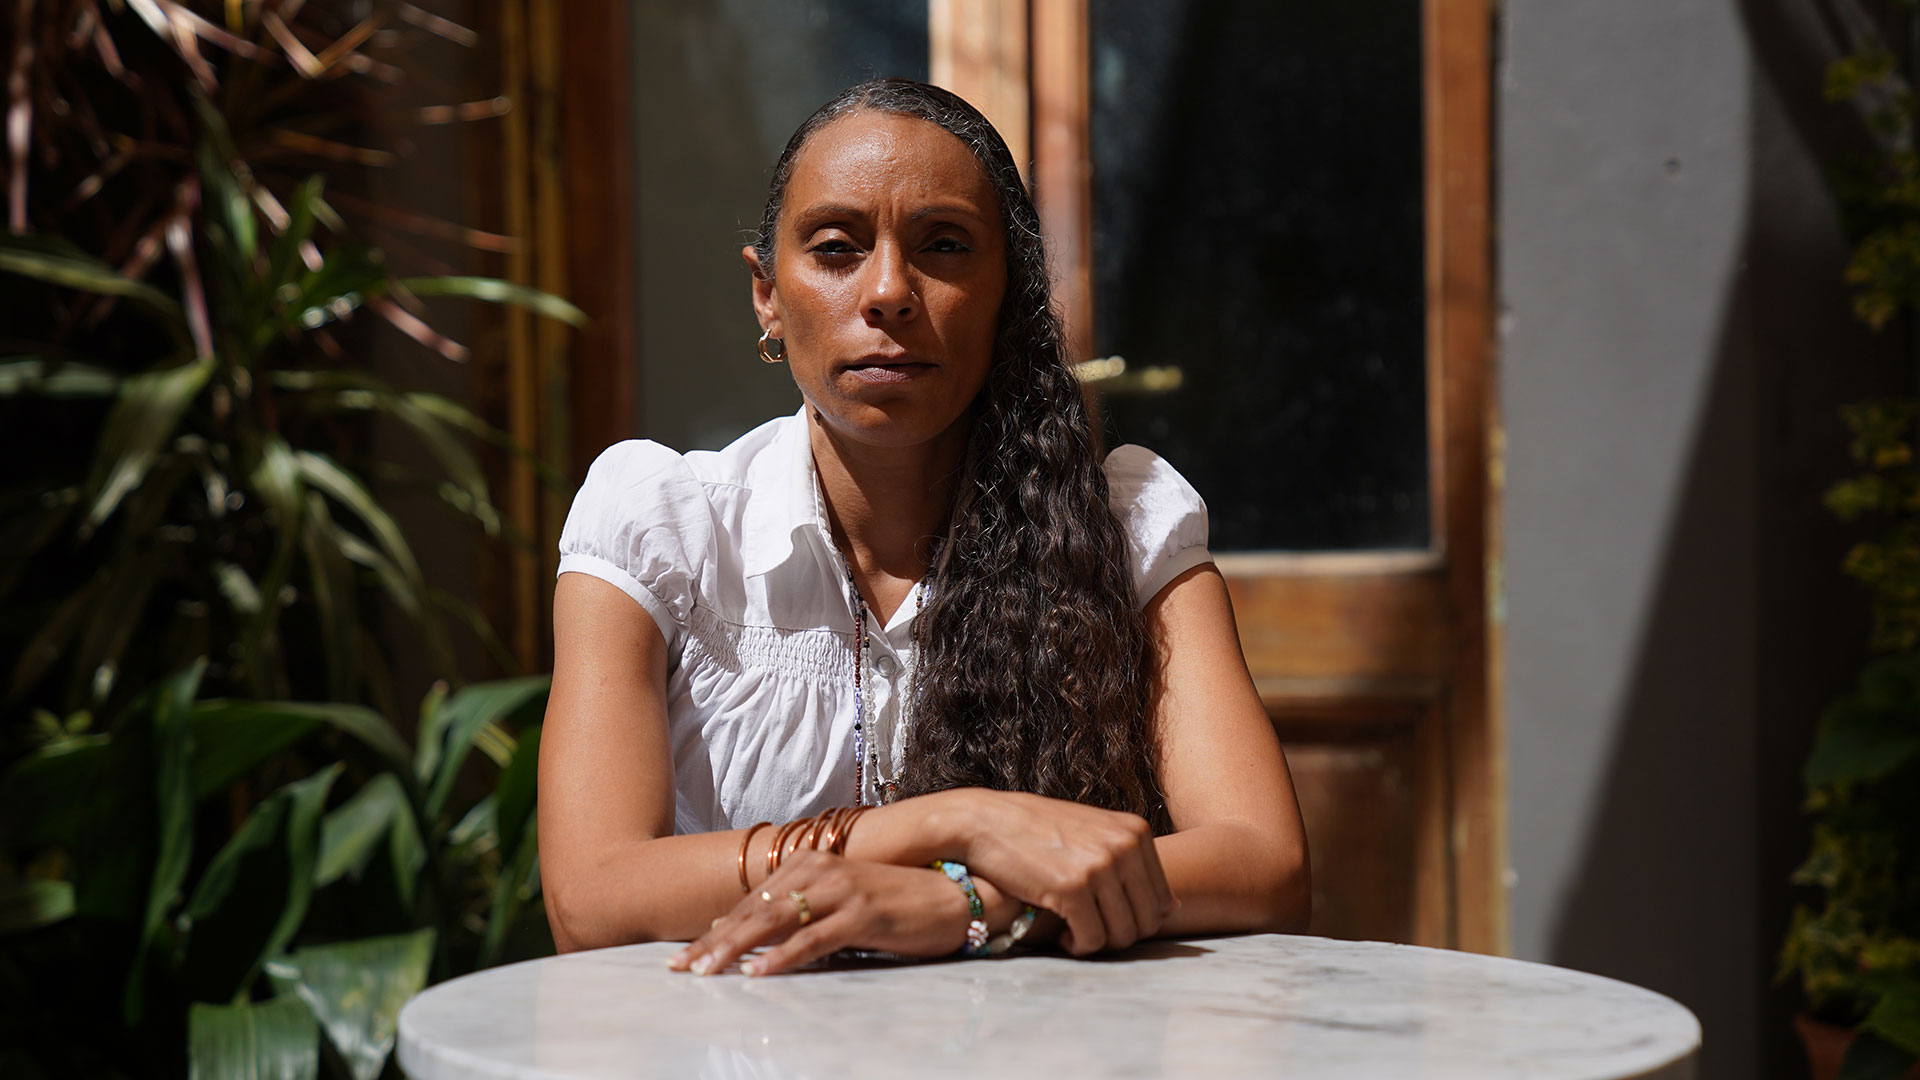 Kirenia Nuñez es psicóloga y tiene 41 años: "El cuerpo está acá, pero el pensamiento y el corazón están en Cuba" (Matías Arbotto)